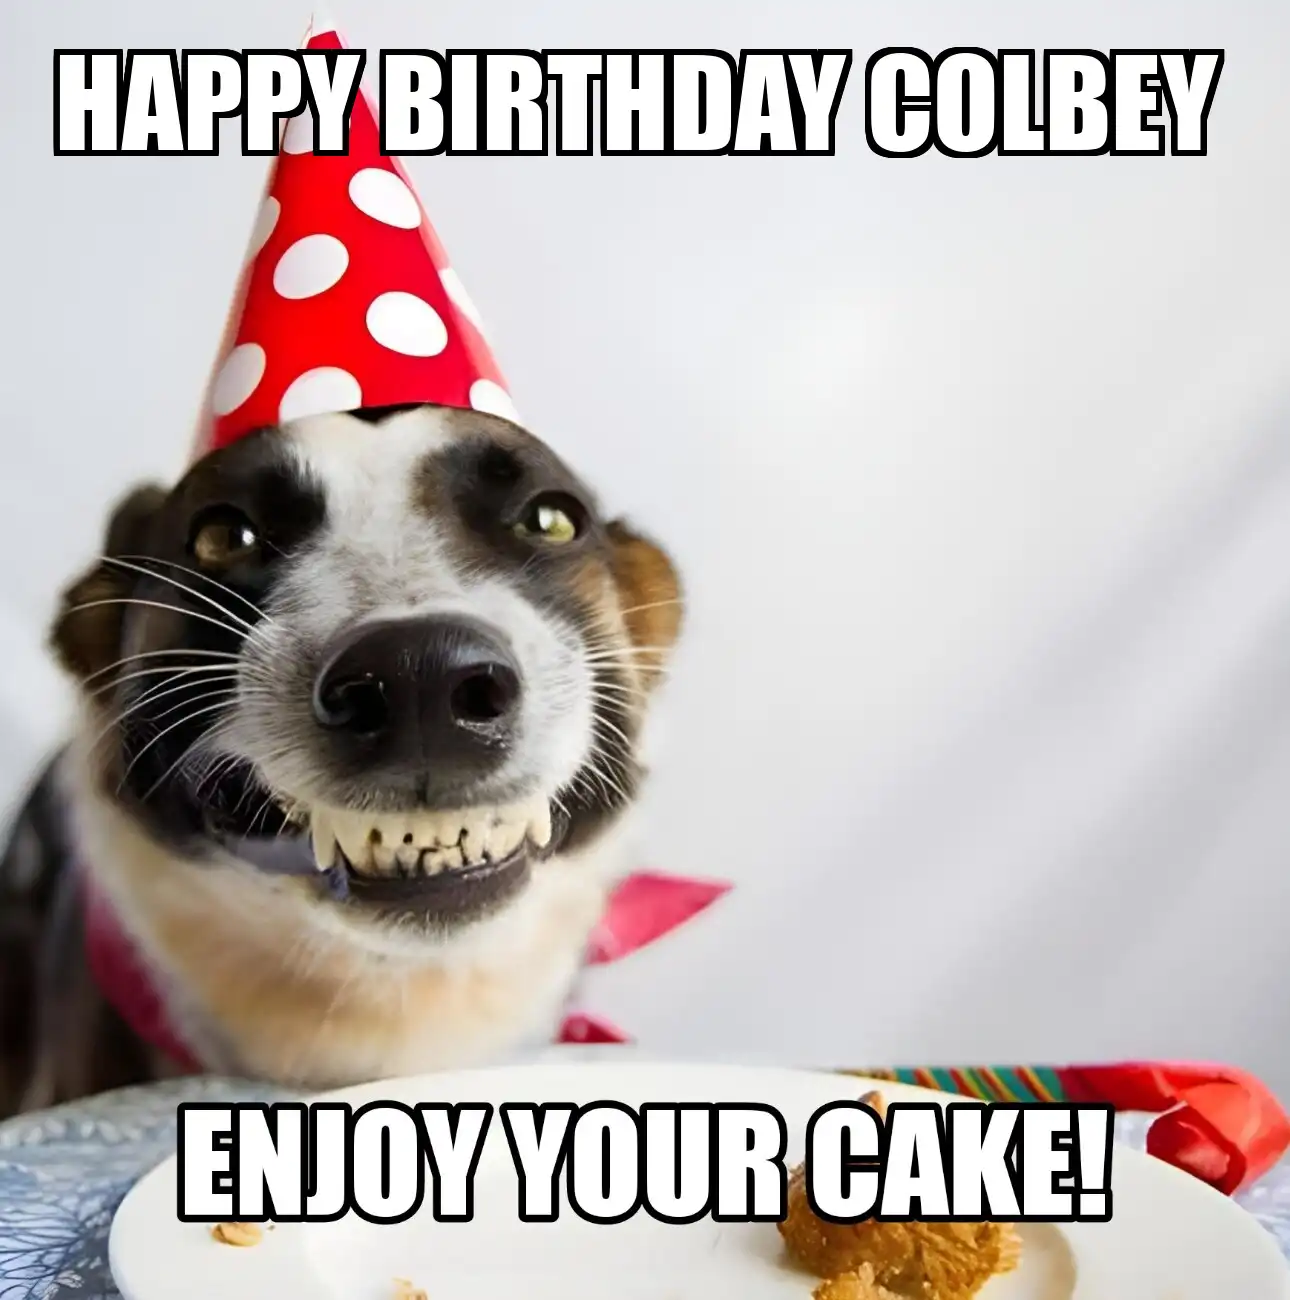 Happy Birthday Colbey Enjoy Your Cake Dog Meme